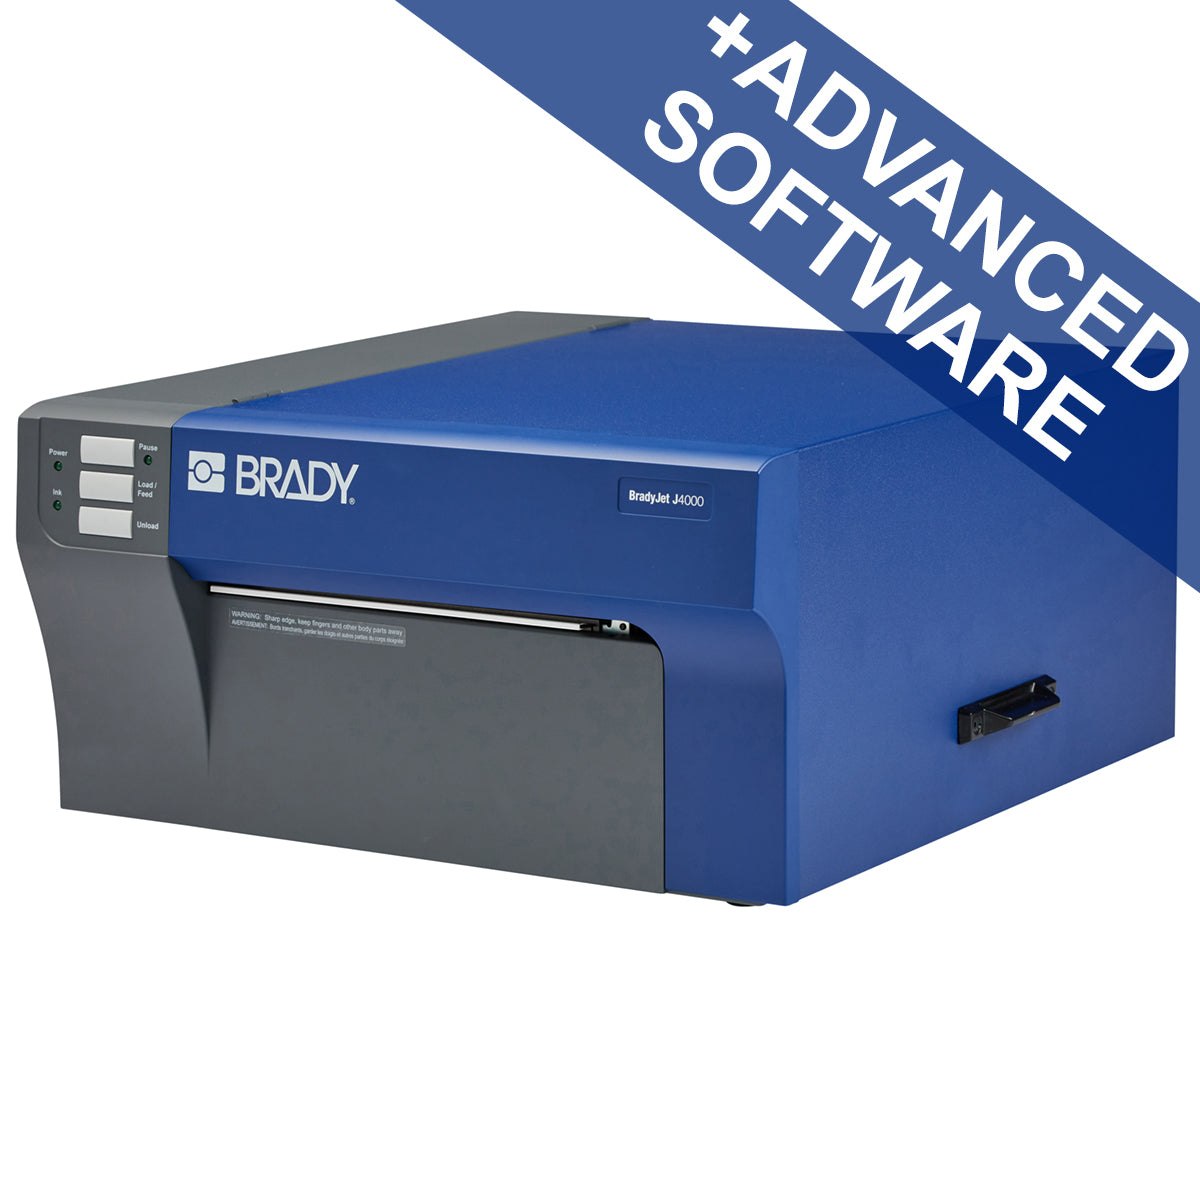 310388 - Stampante a colori per etichette BradyJet J4000 con software Identificazione sicurezza e impianti